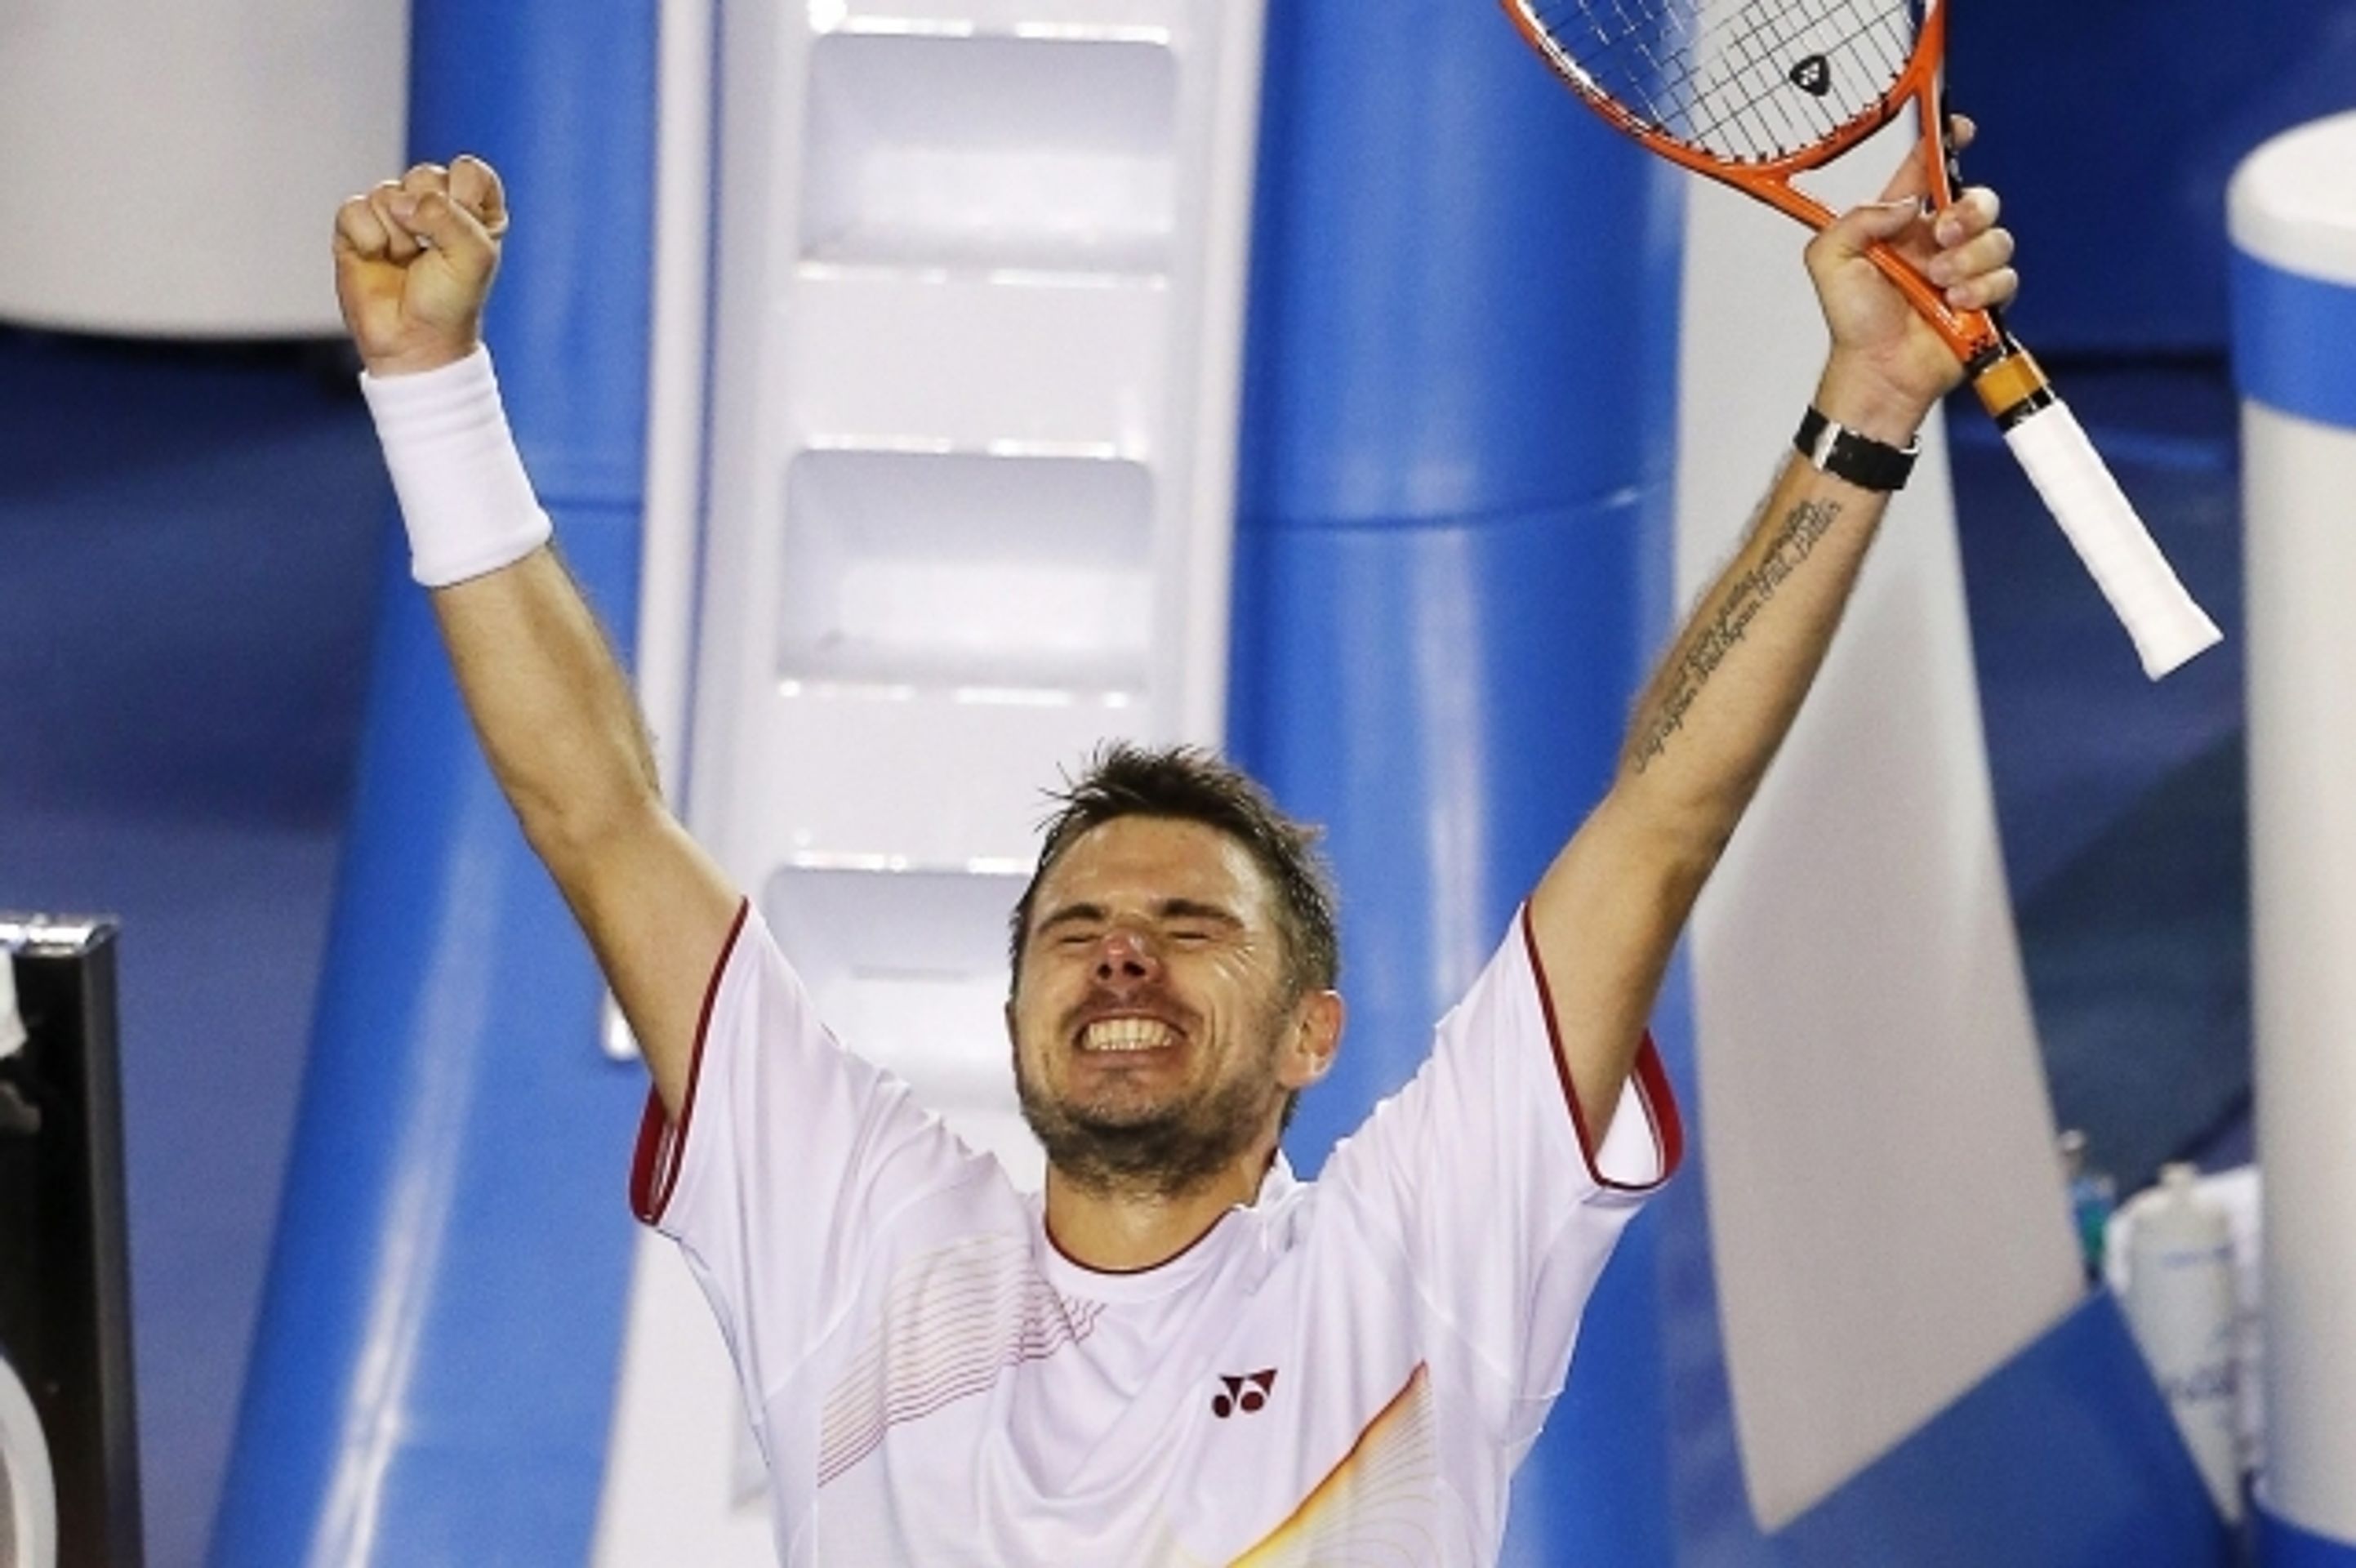 Stanislas Wawrinka porazil na Australian Open Novaka Djokoviče - 6 - GALERIE: Stanislas Wawrinka porazil na Australian Open Novaka Djokoviče (6/13)